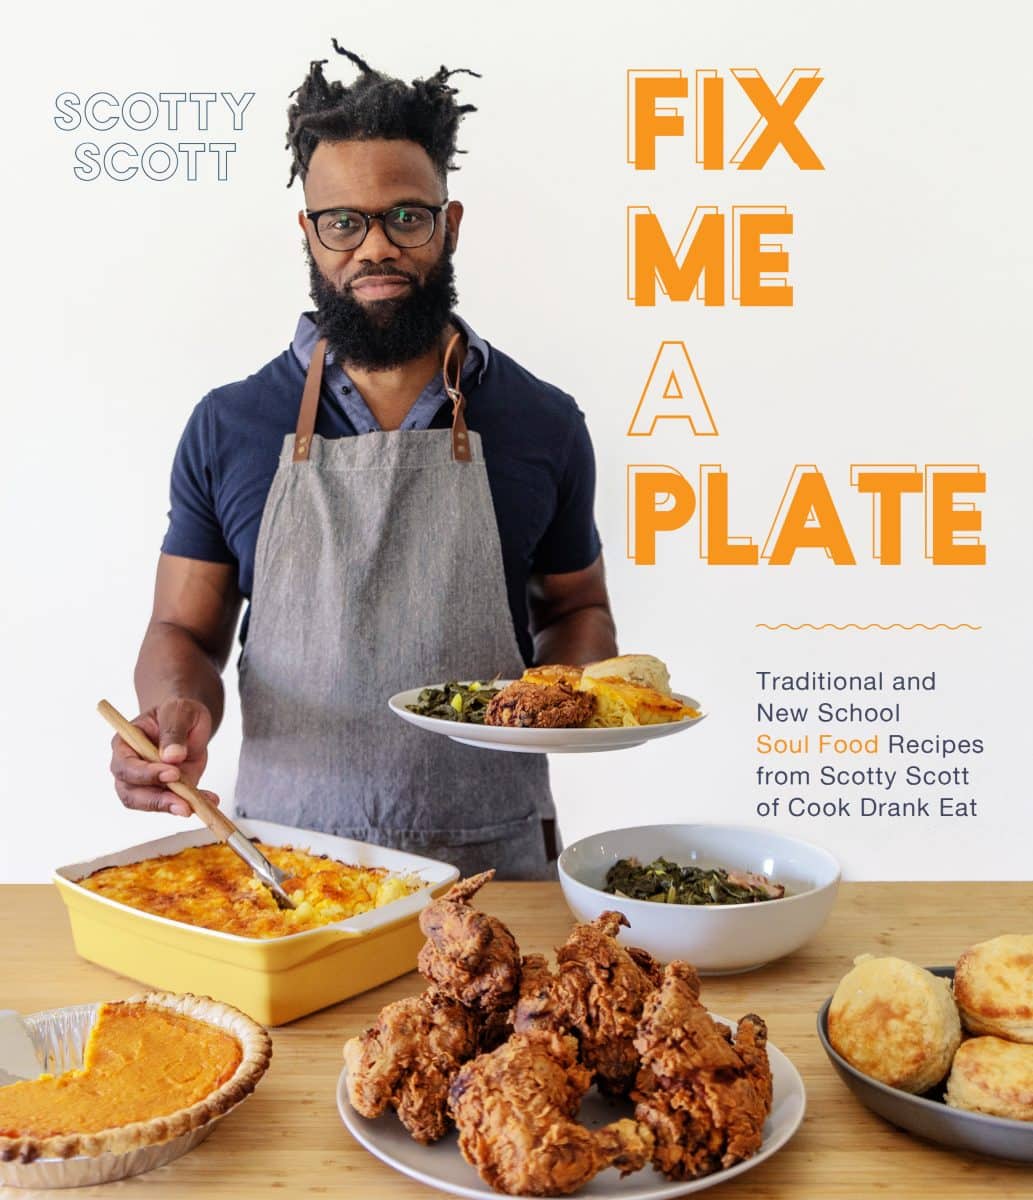 Soul food cookbook - Fix Me a Plate cookbook cover by Scotty Scott